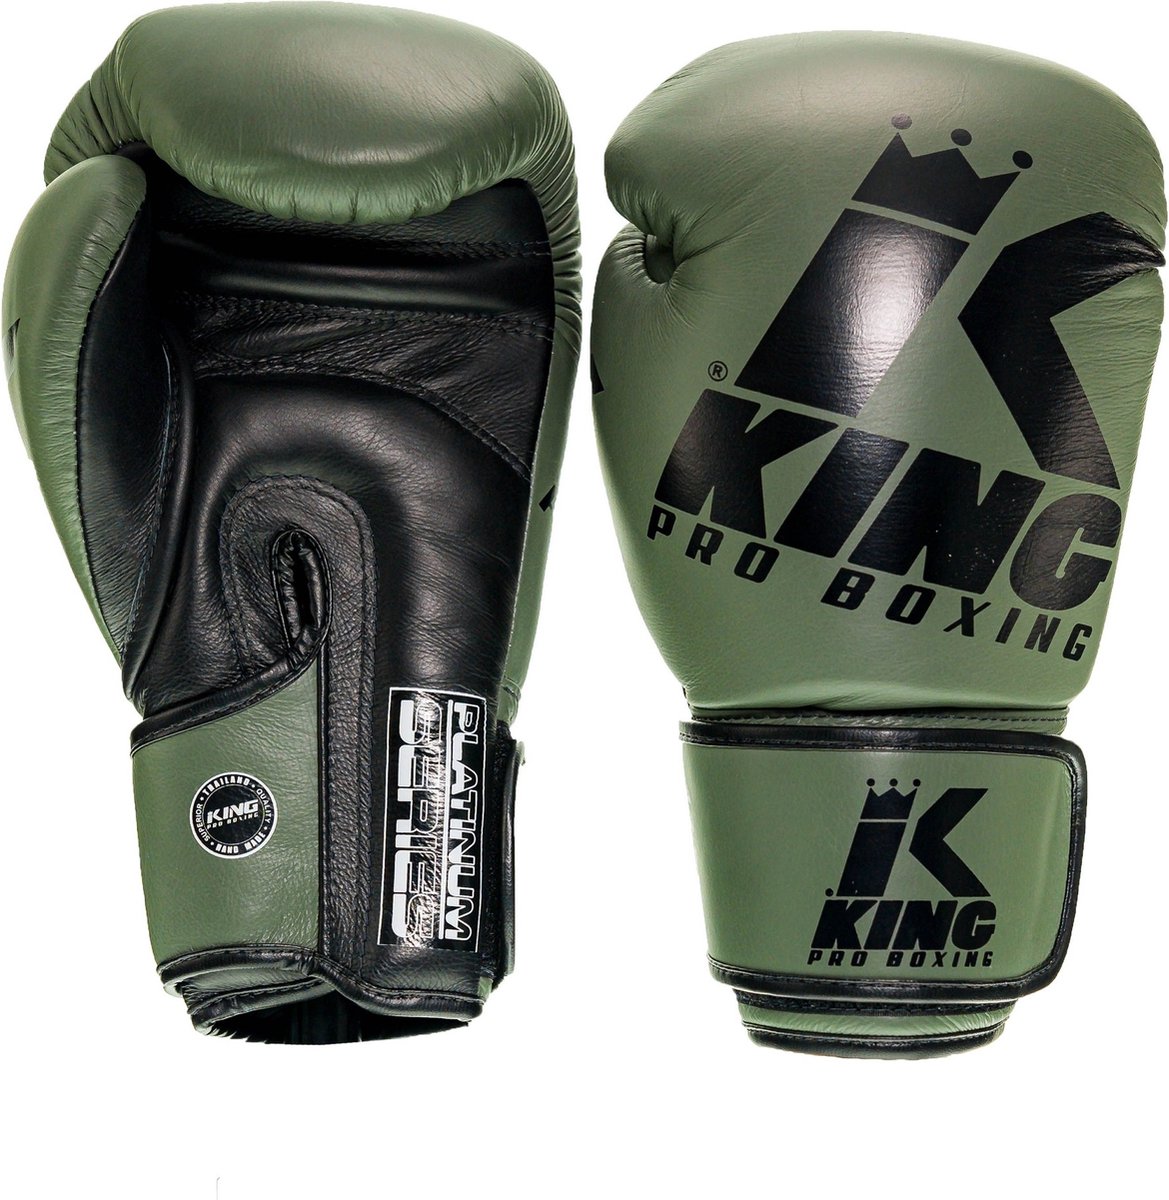 King (kick)bokshandschoenen Platinum 3 Groen/Zwart 16oz